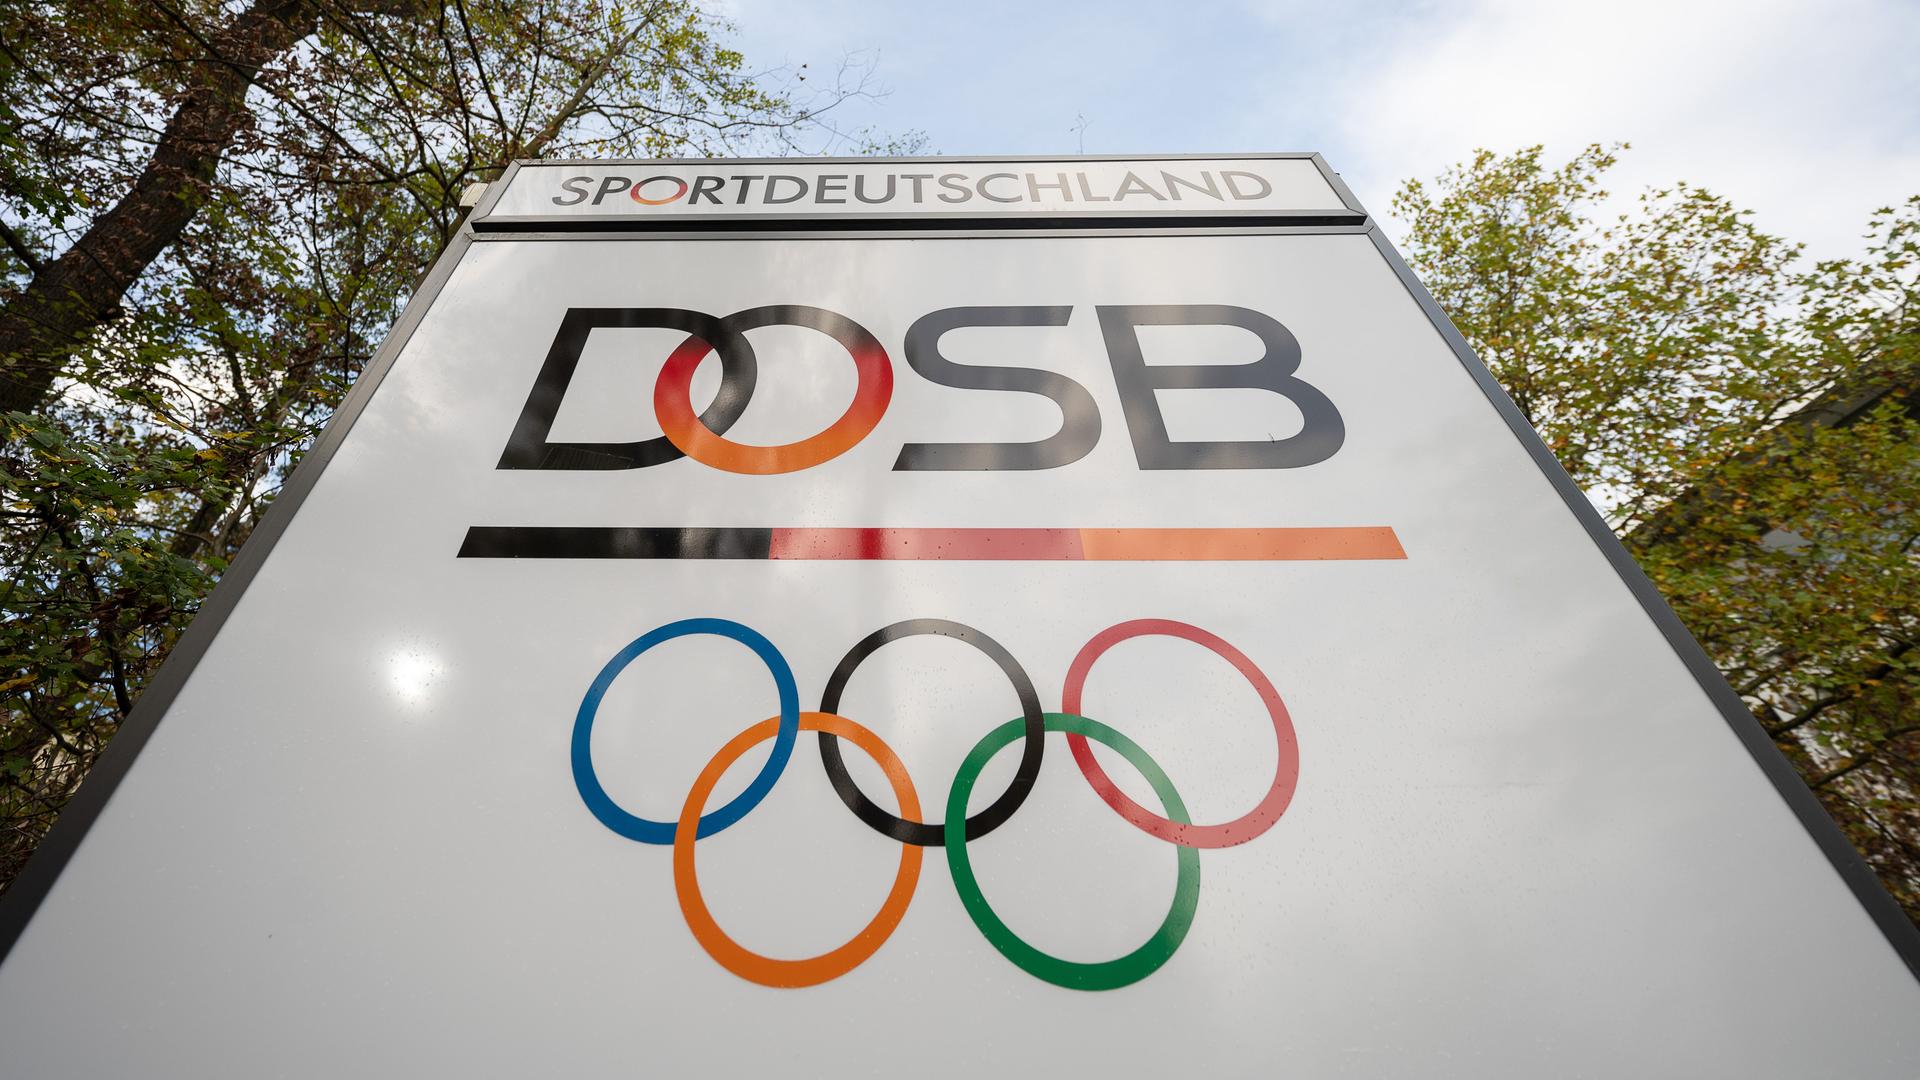 Das Logo "Deutscher Olympischer Sportbund" (DOSB) steht an dessen Hauptsitz auf einem Schild. Die Olympischen Ringe und  der Schriftzug "Sportdeutschland" sind auch abgebildet.